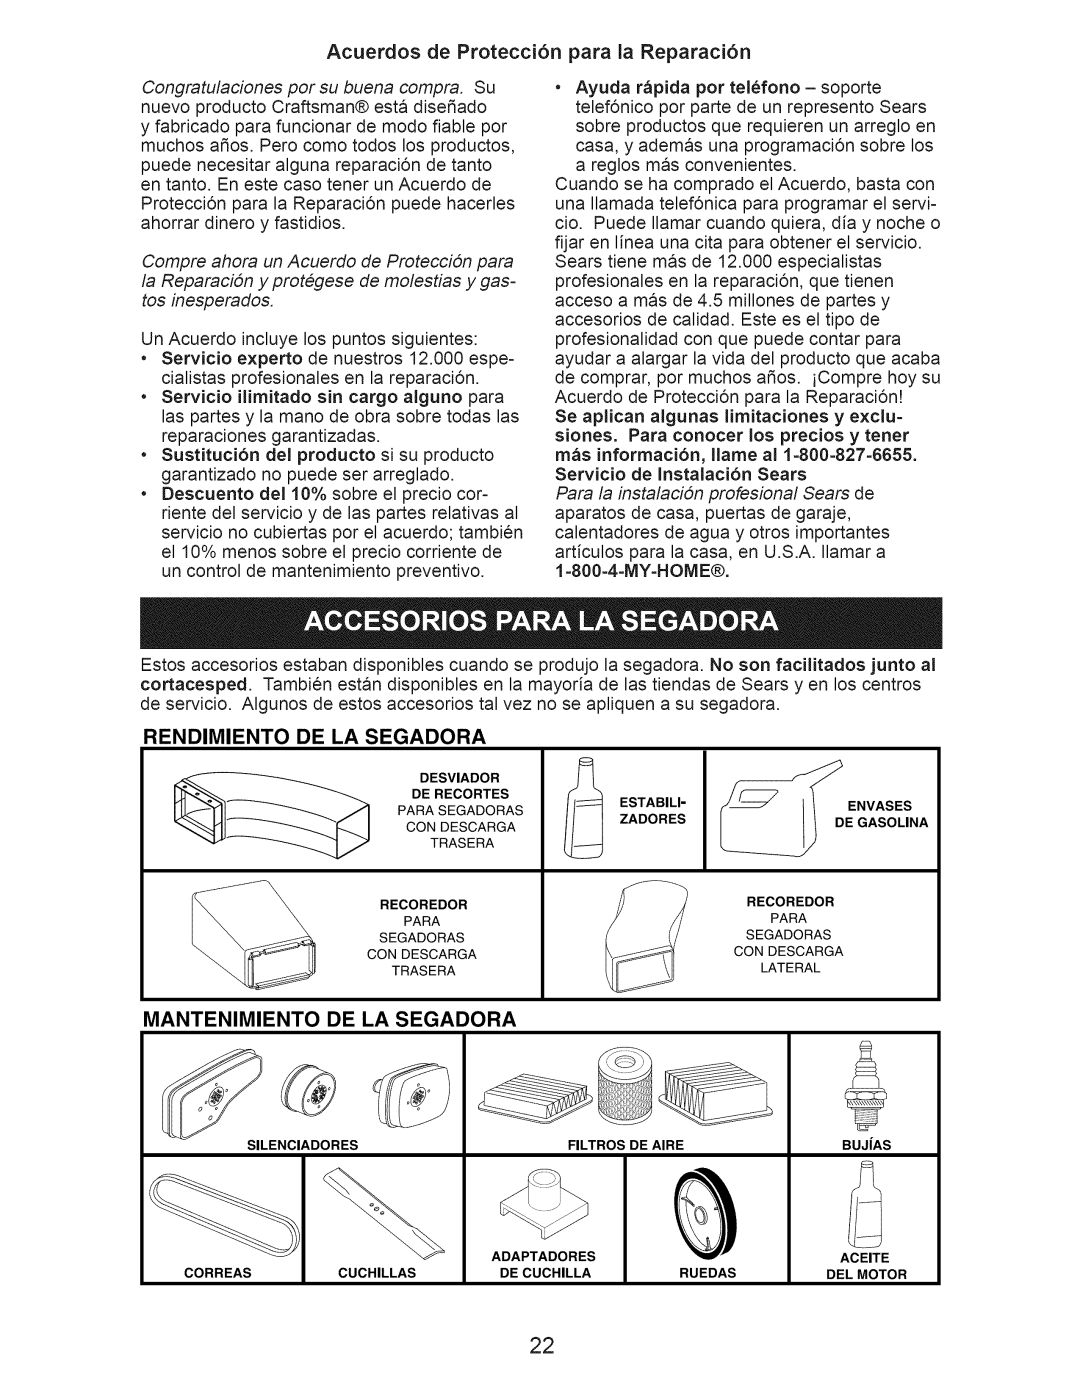 Craftsman 917.375012 owner manual Acuerdos de Protecci6n para la Reparaci6n, Rendimiento, De La Segadora, Mantenimiento 